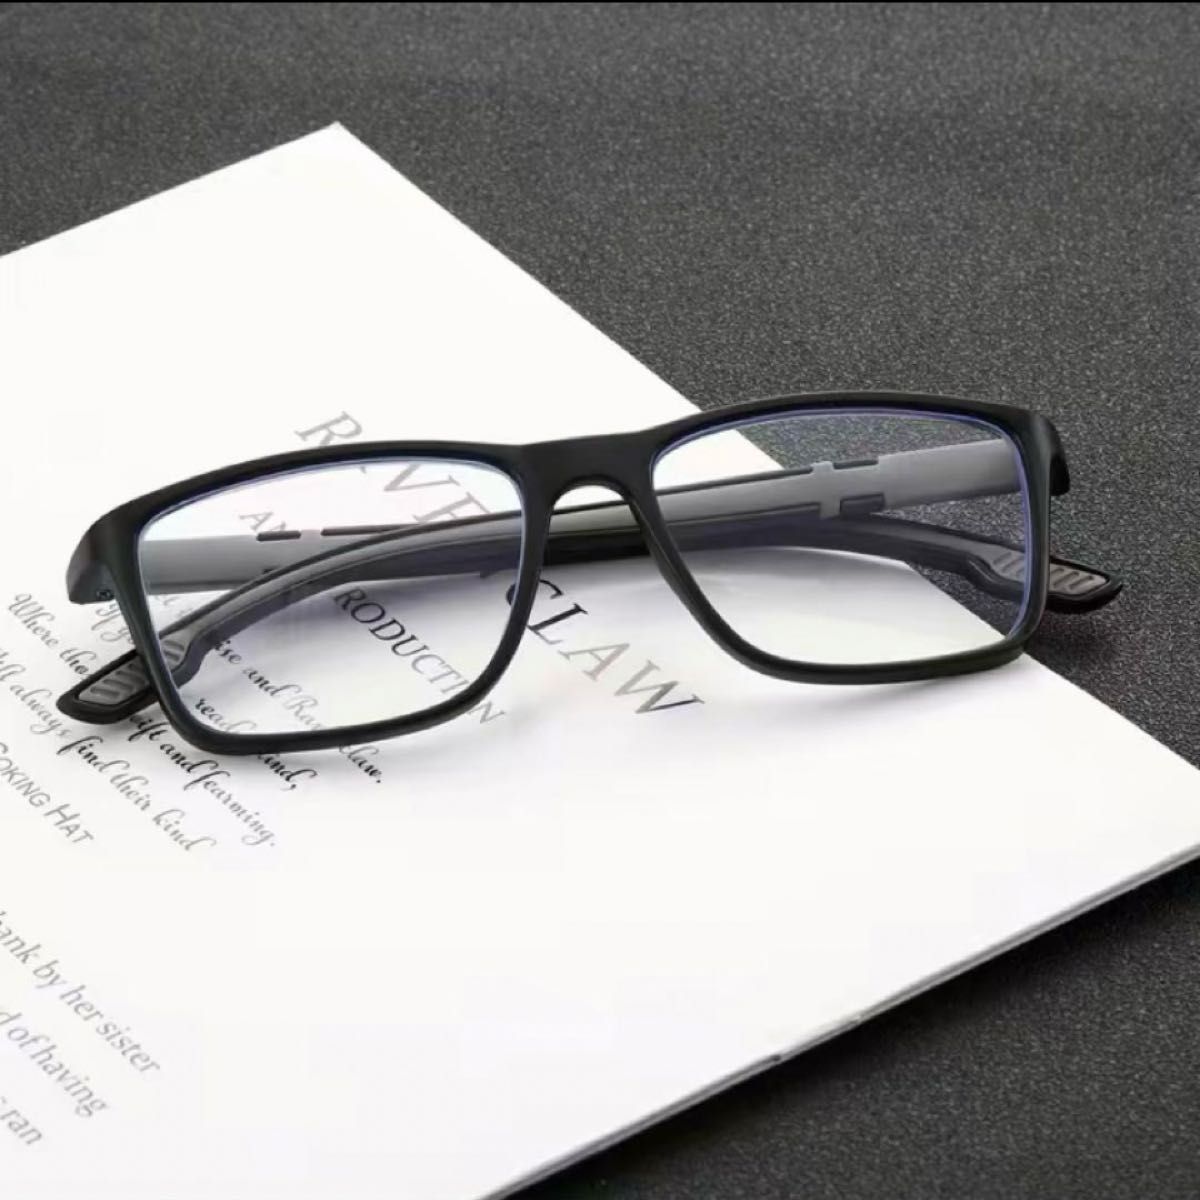 新品 リーディンググラス シニアグラス 老眼鏡＋2.0 BK/GR ユニセックス(男女兼用) ブルーライトカットモデル 超軽量